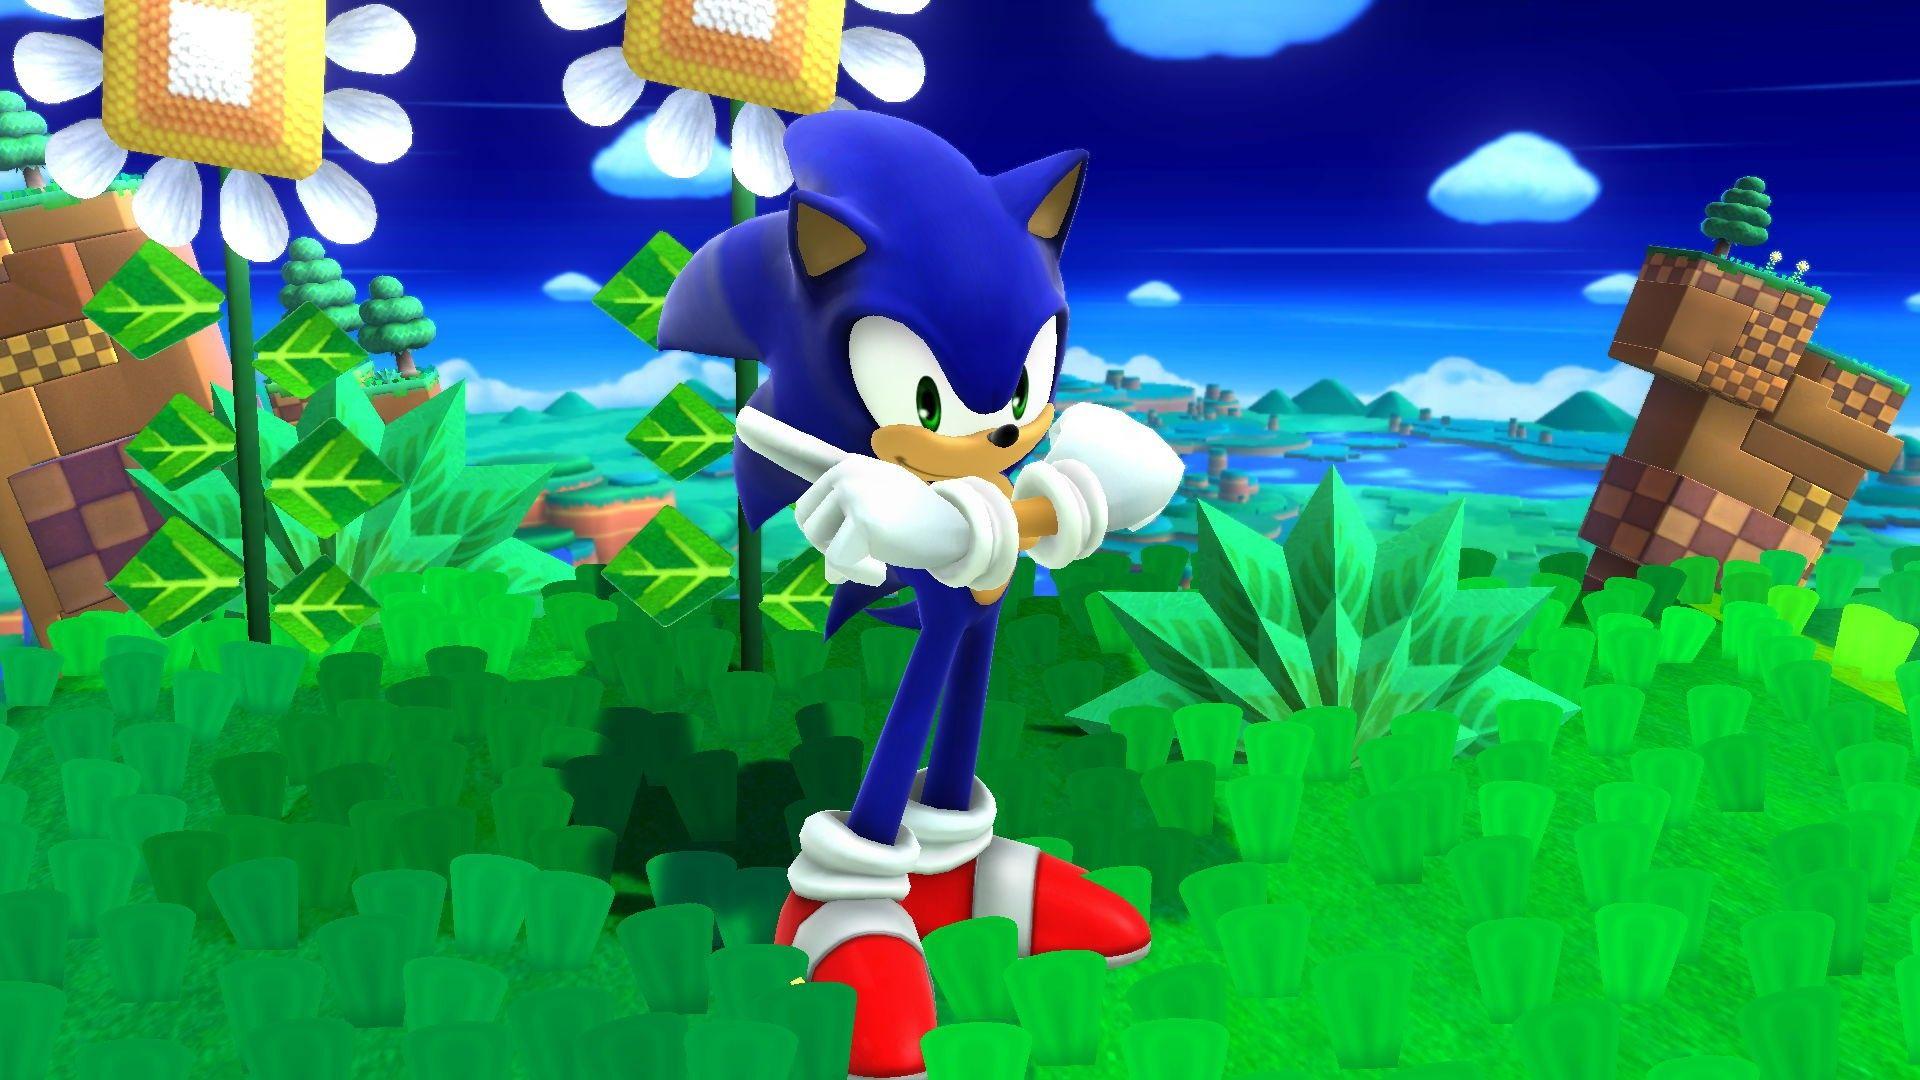 Sonic Adventure 2 Battle Re Skin V0.1 Super Smash Bros. For Wii U